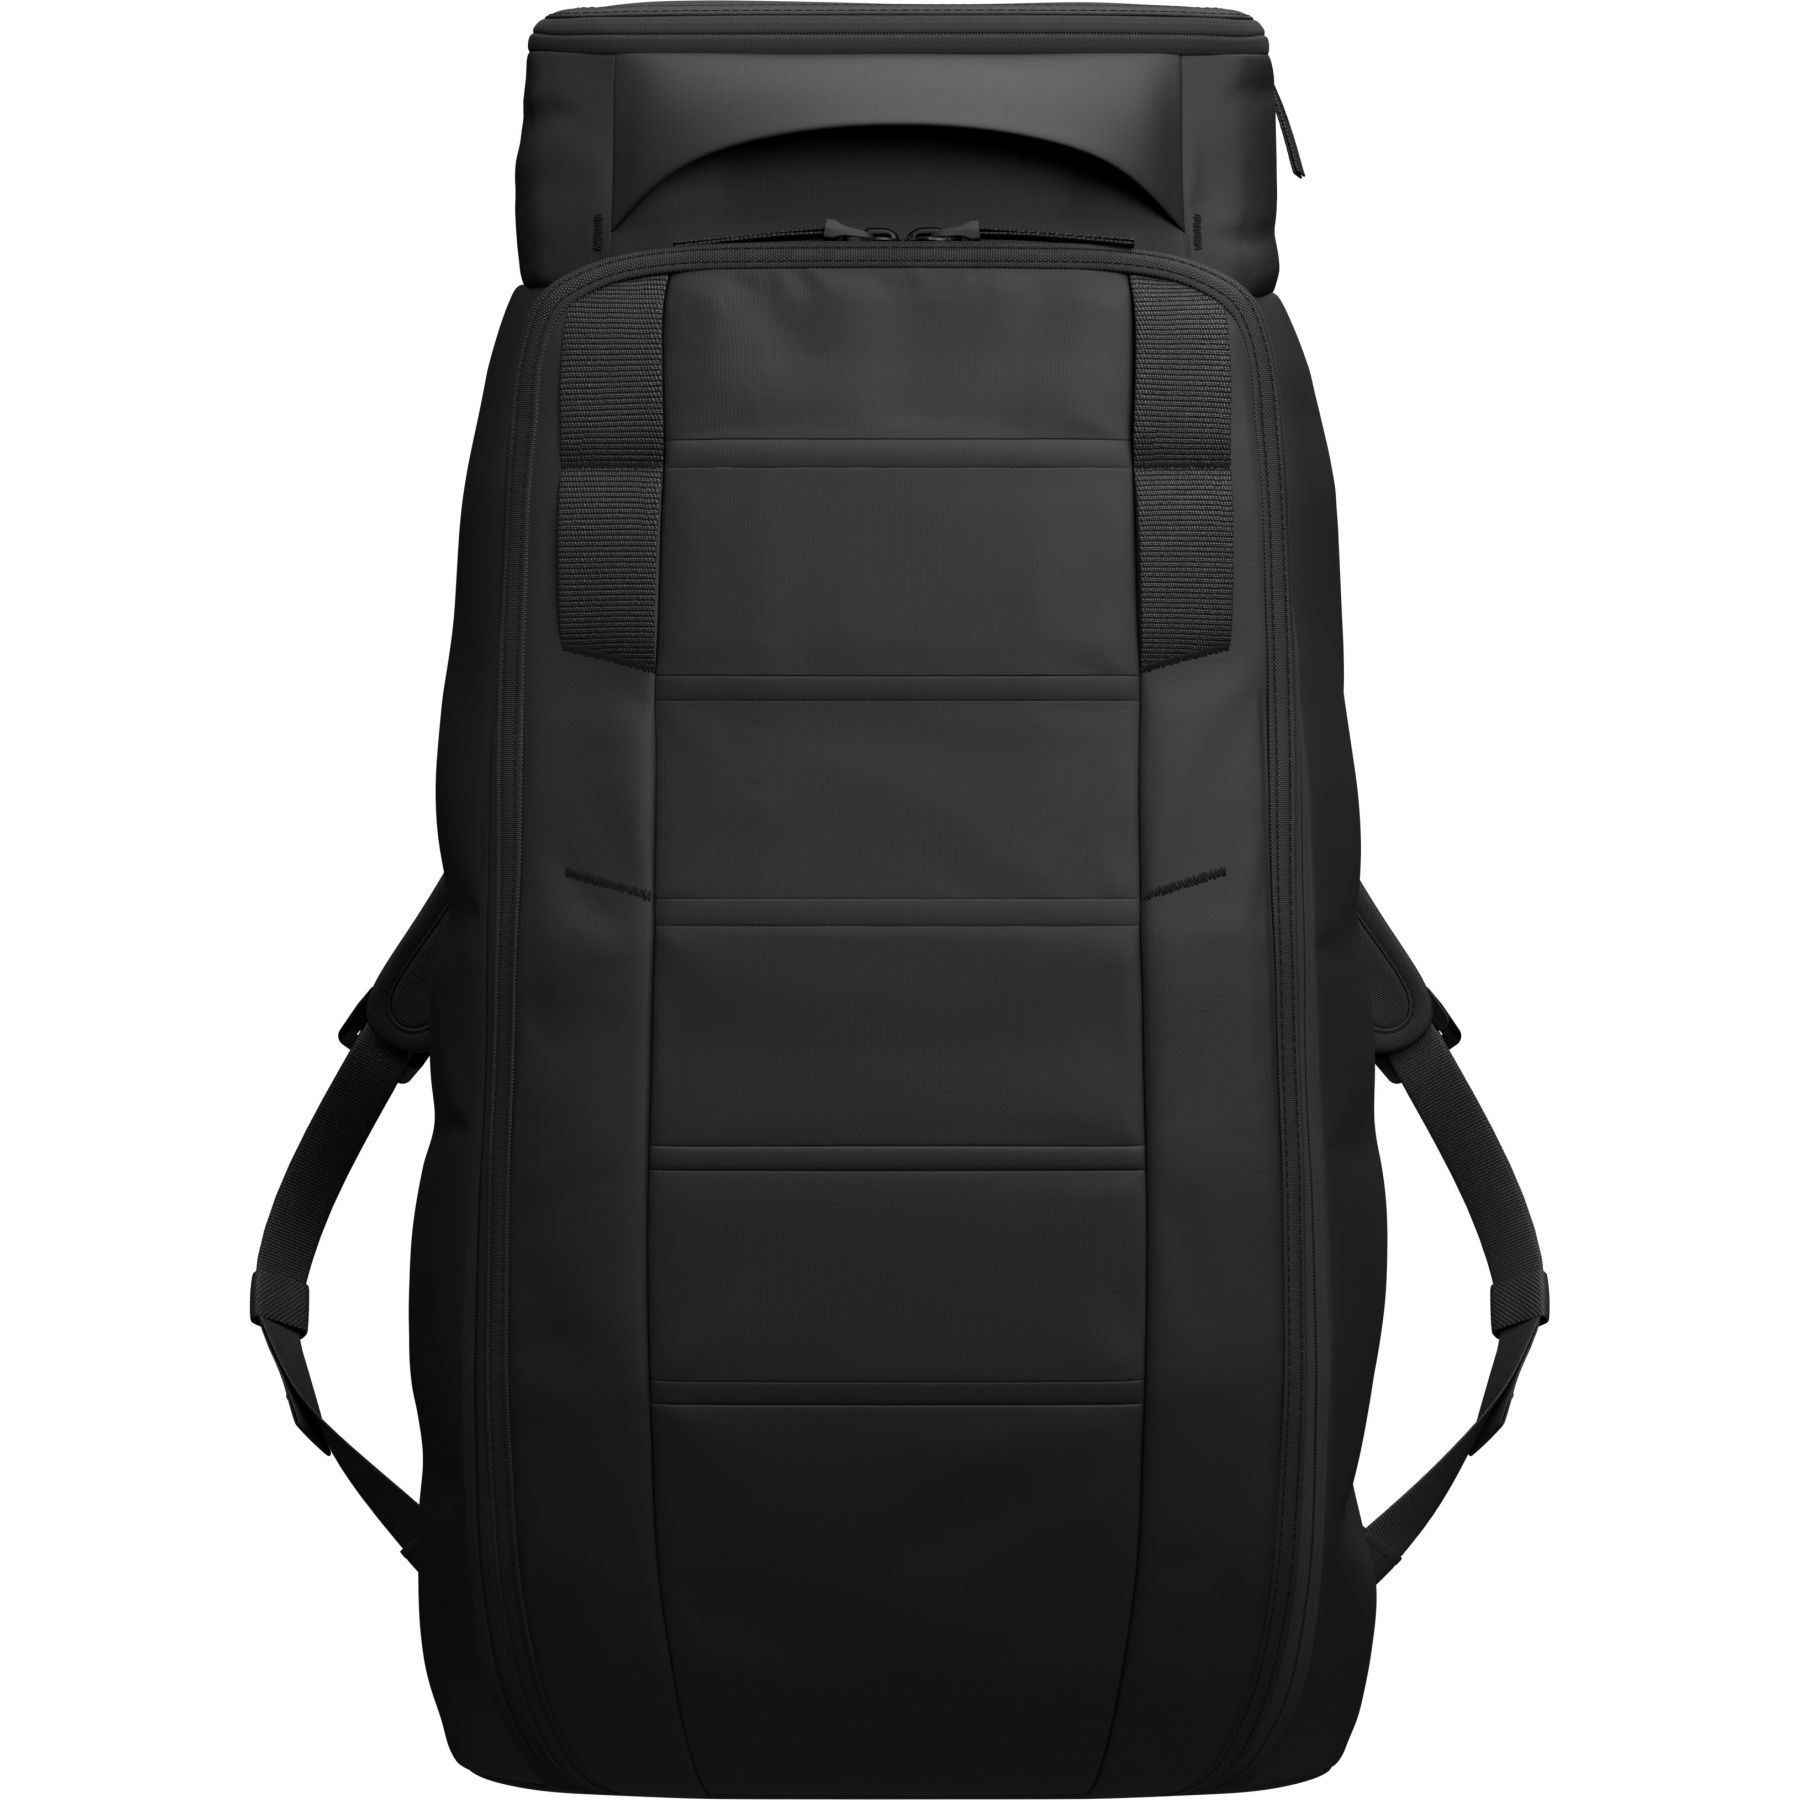 Brug Db Hugger, 30L, rygsæk, black out til en forbedret oplevelse